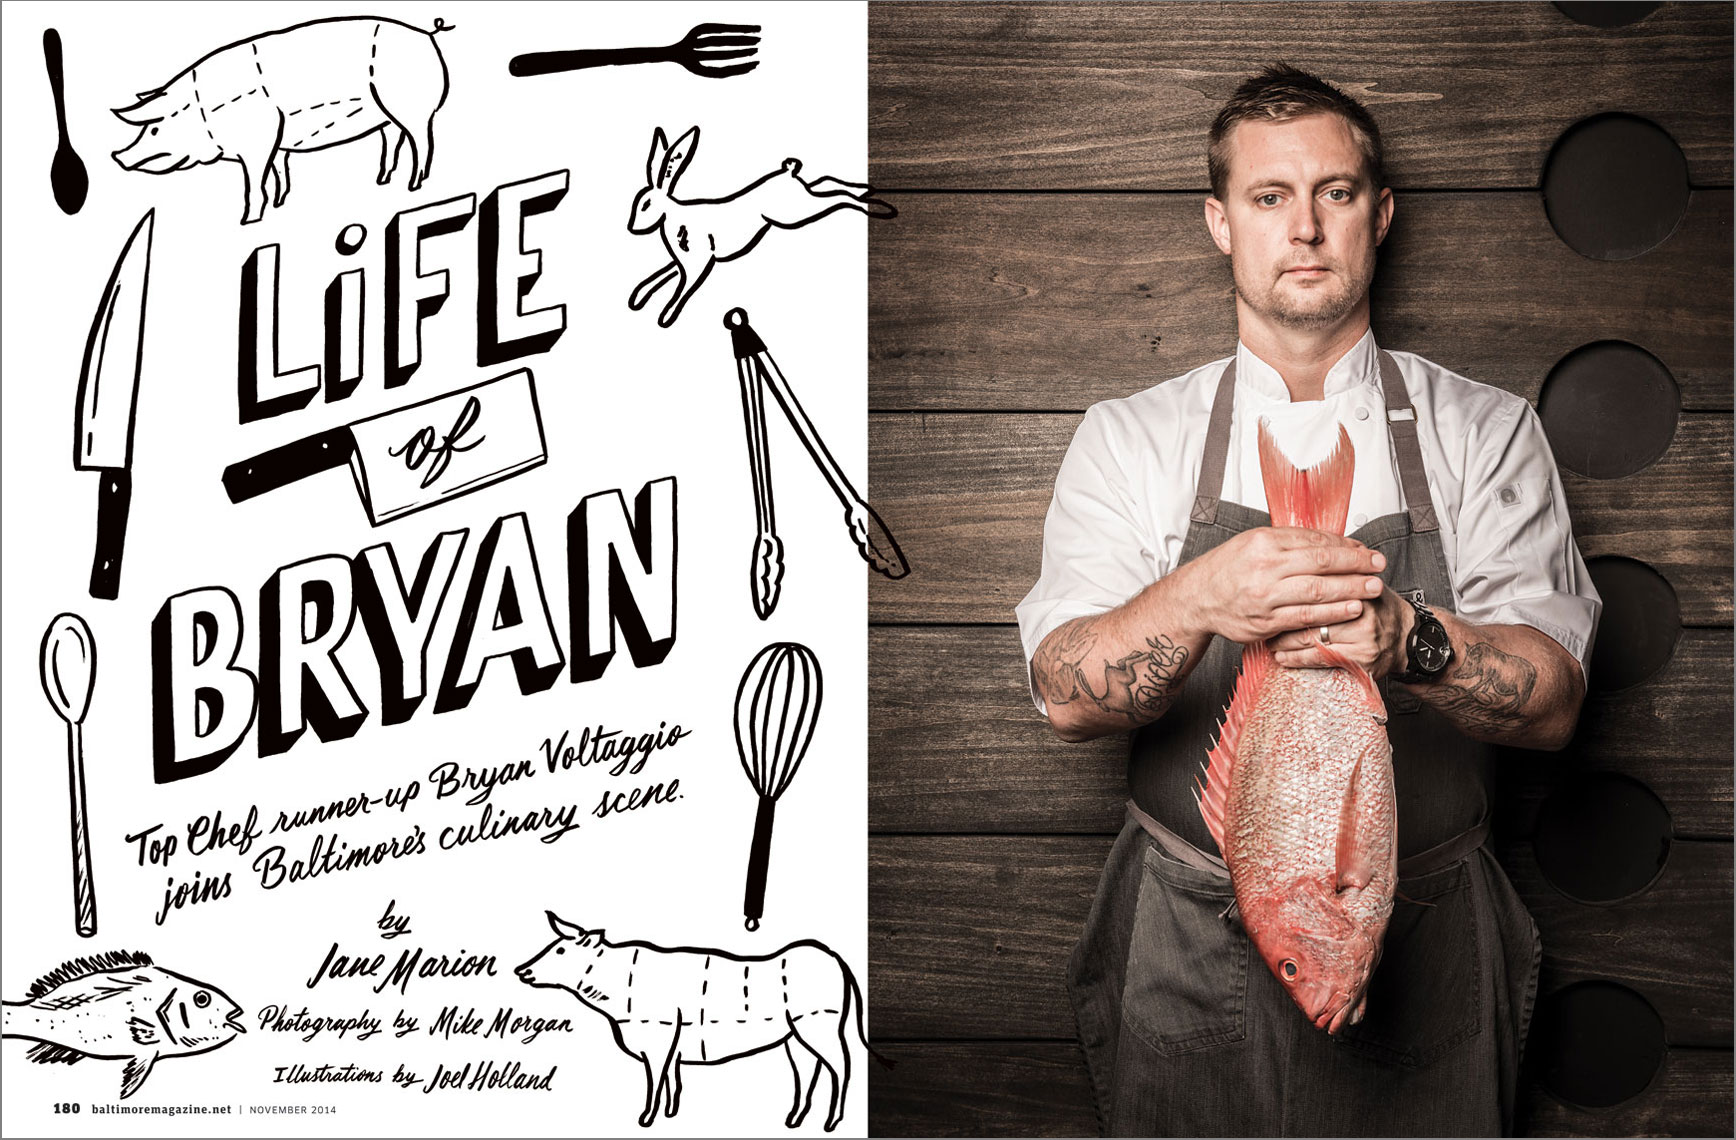 Baltimore Magazine spread featuring chef Bryan Voltaggio